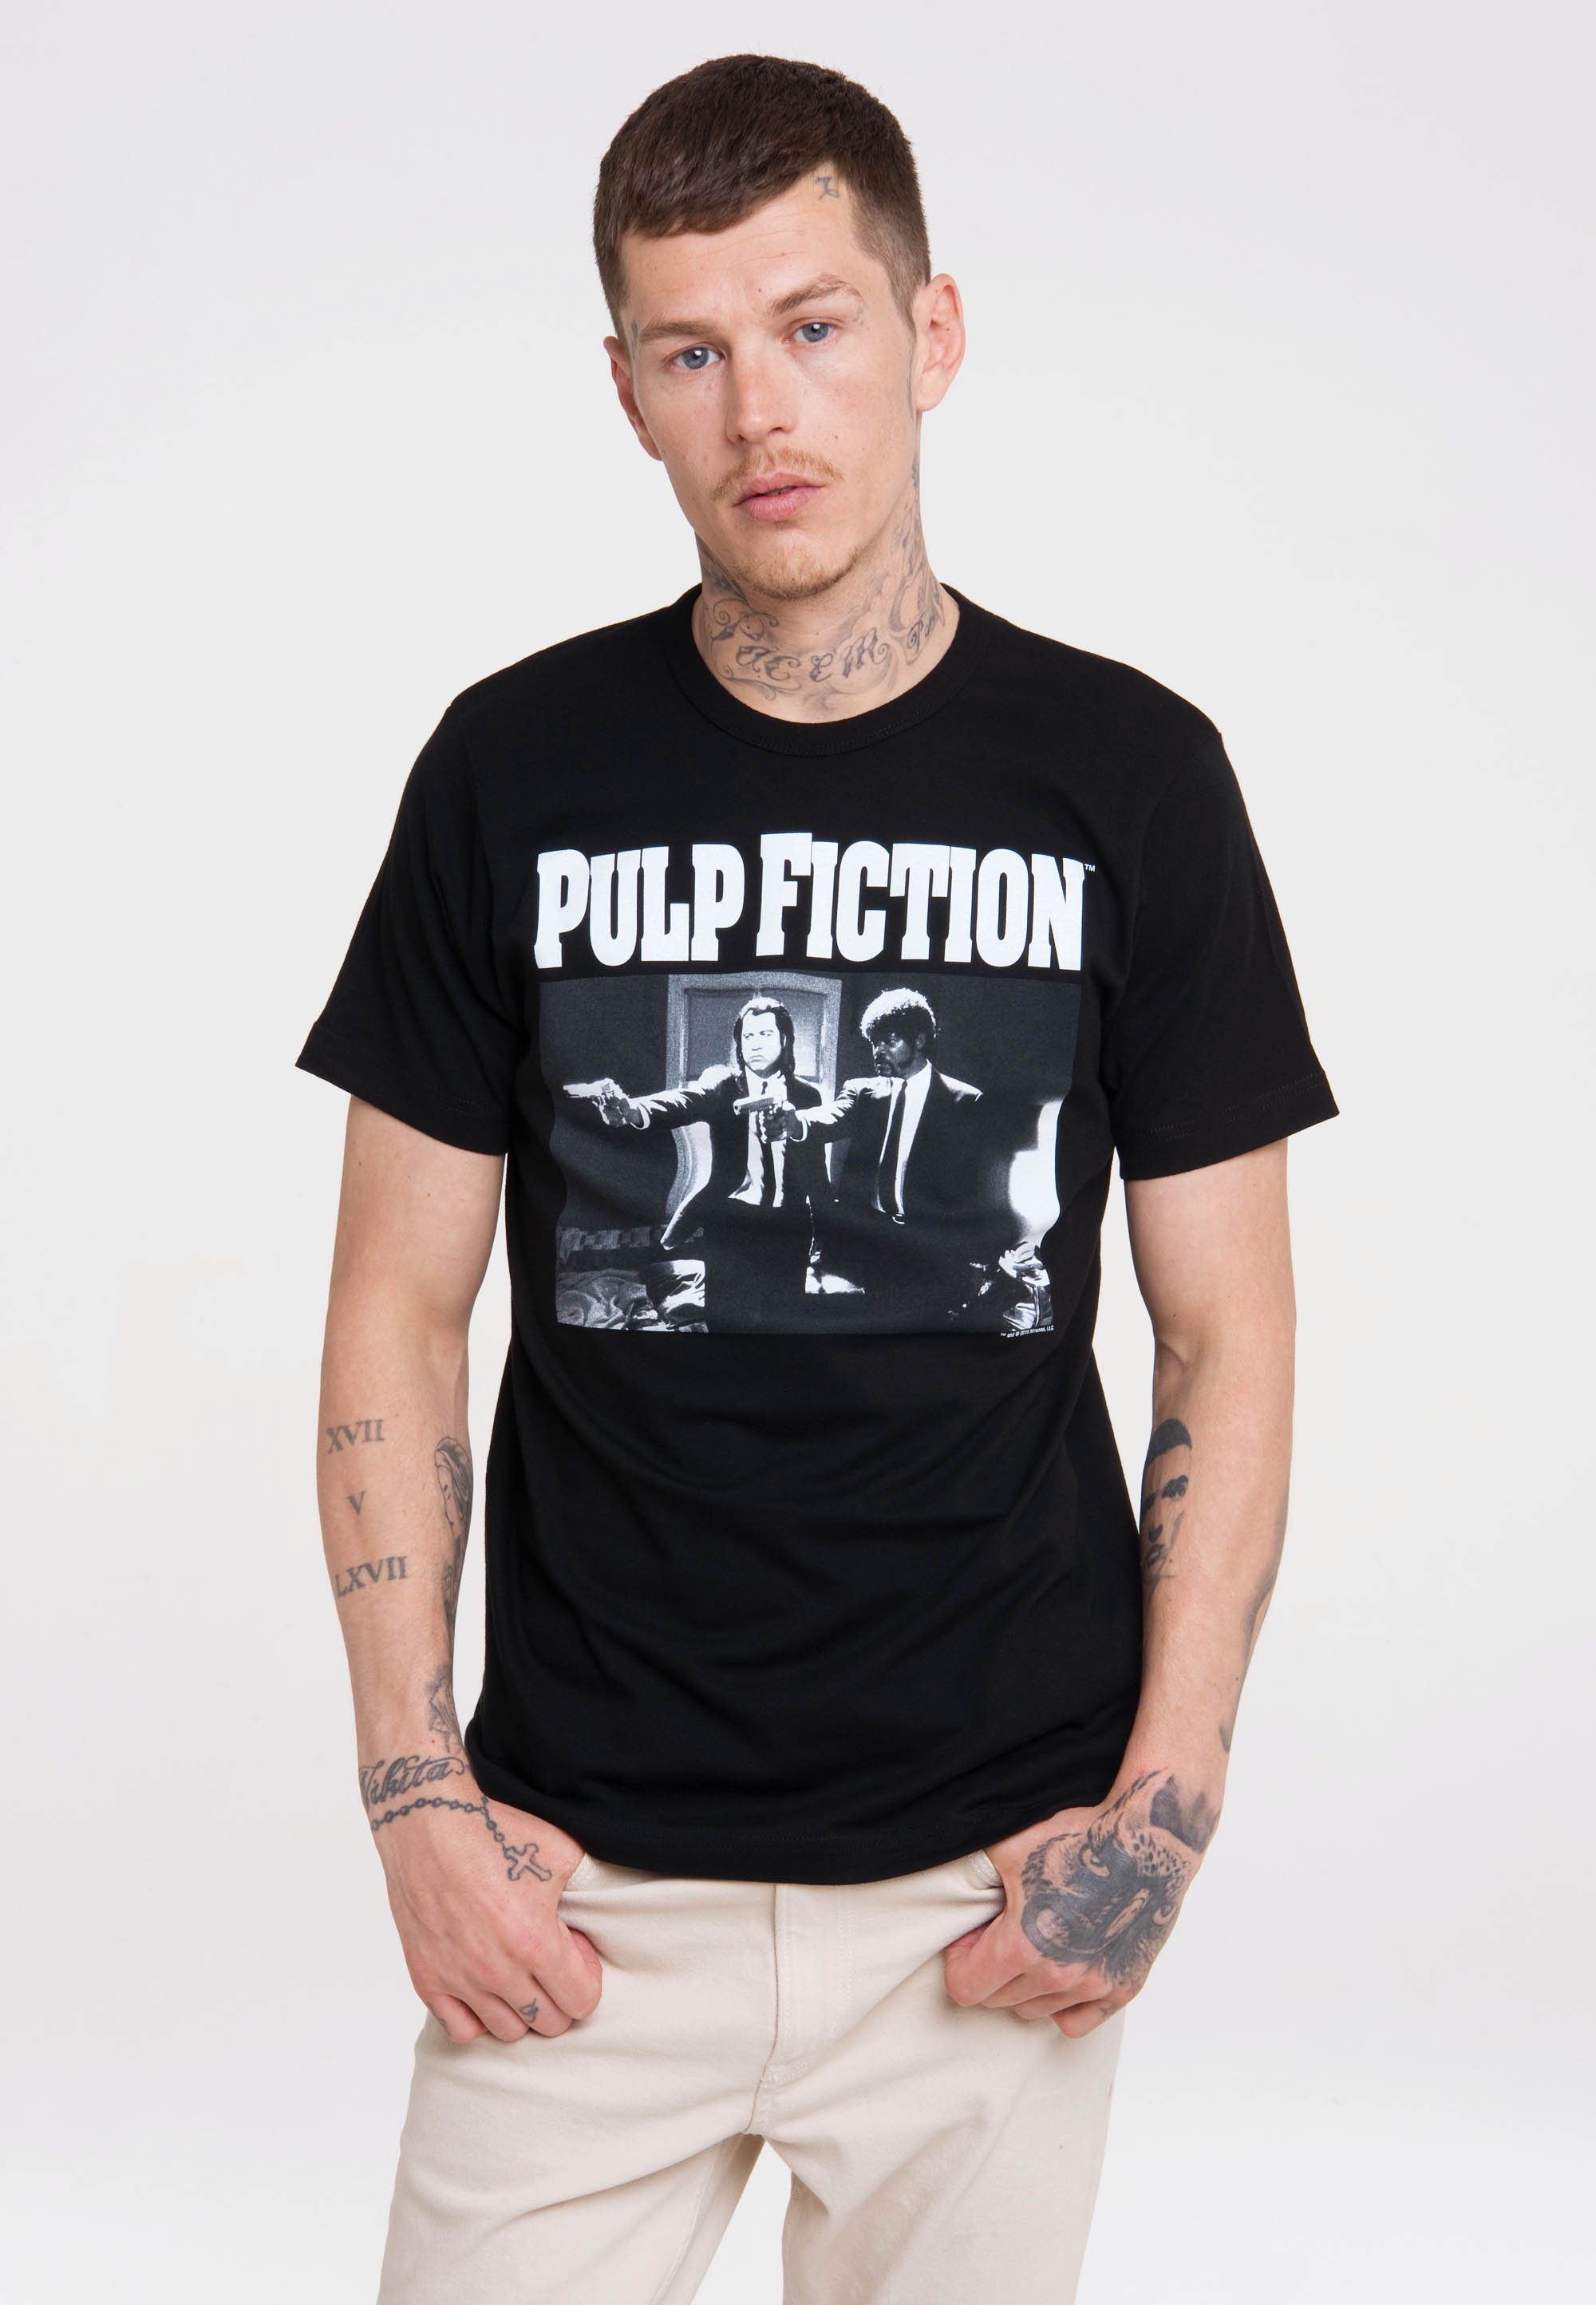 T-Shirt LOGOSHIRT Front-Print mit Pulp Fiction lässigem